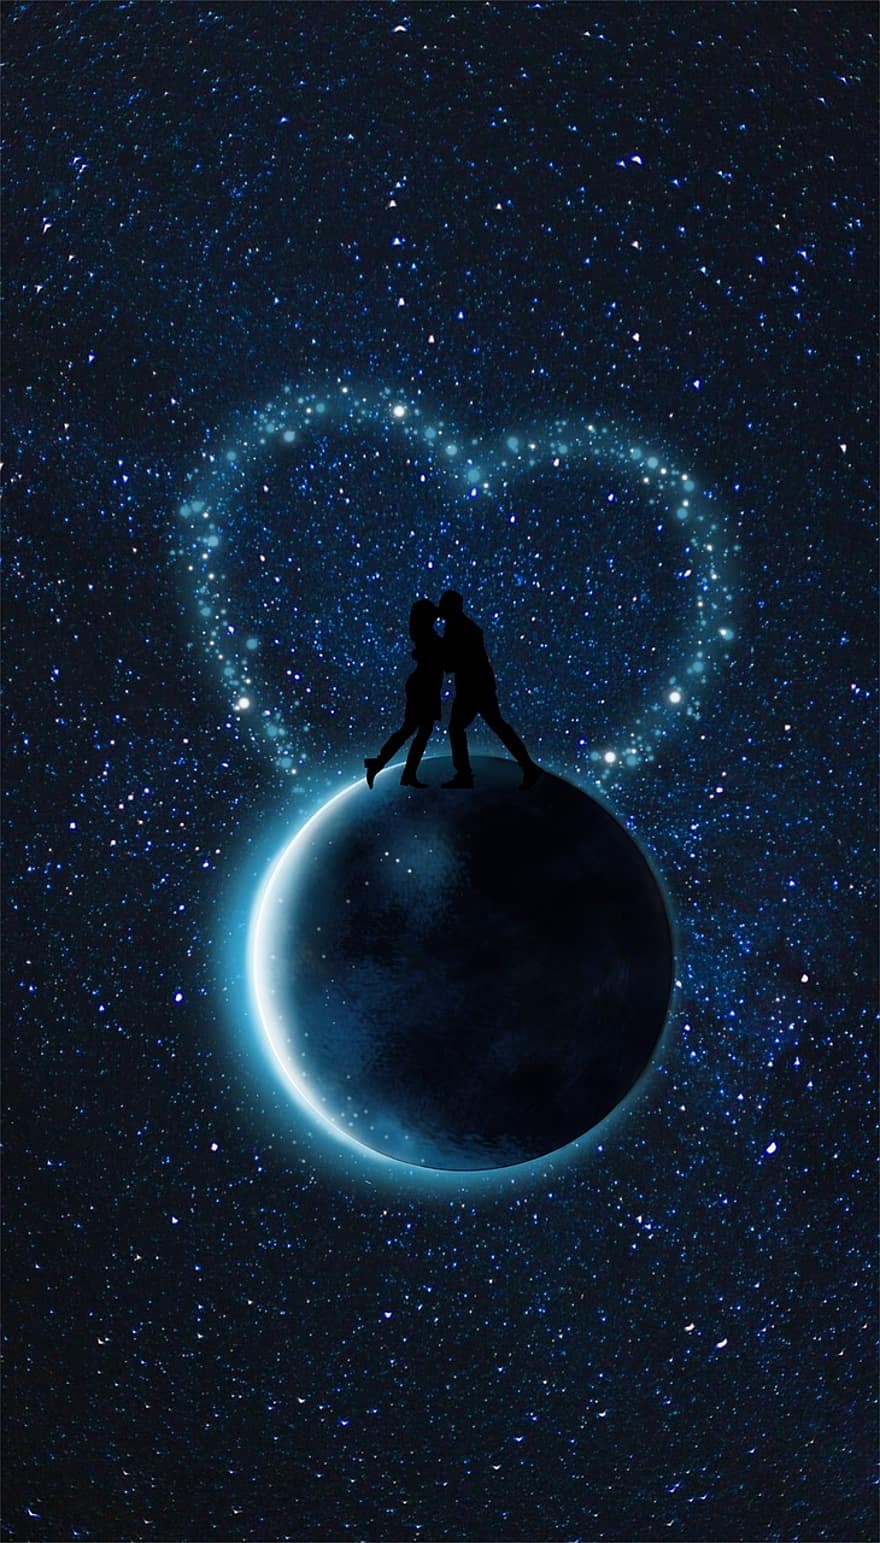 ดวงจันทร์, คู่, หัวใจ, สีน้ำเงิน, จักรวาล, ดาว, เปล่งปลั่ง, ความรัก, จูบ, โรแมนติก